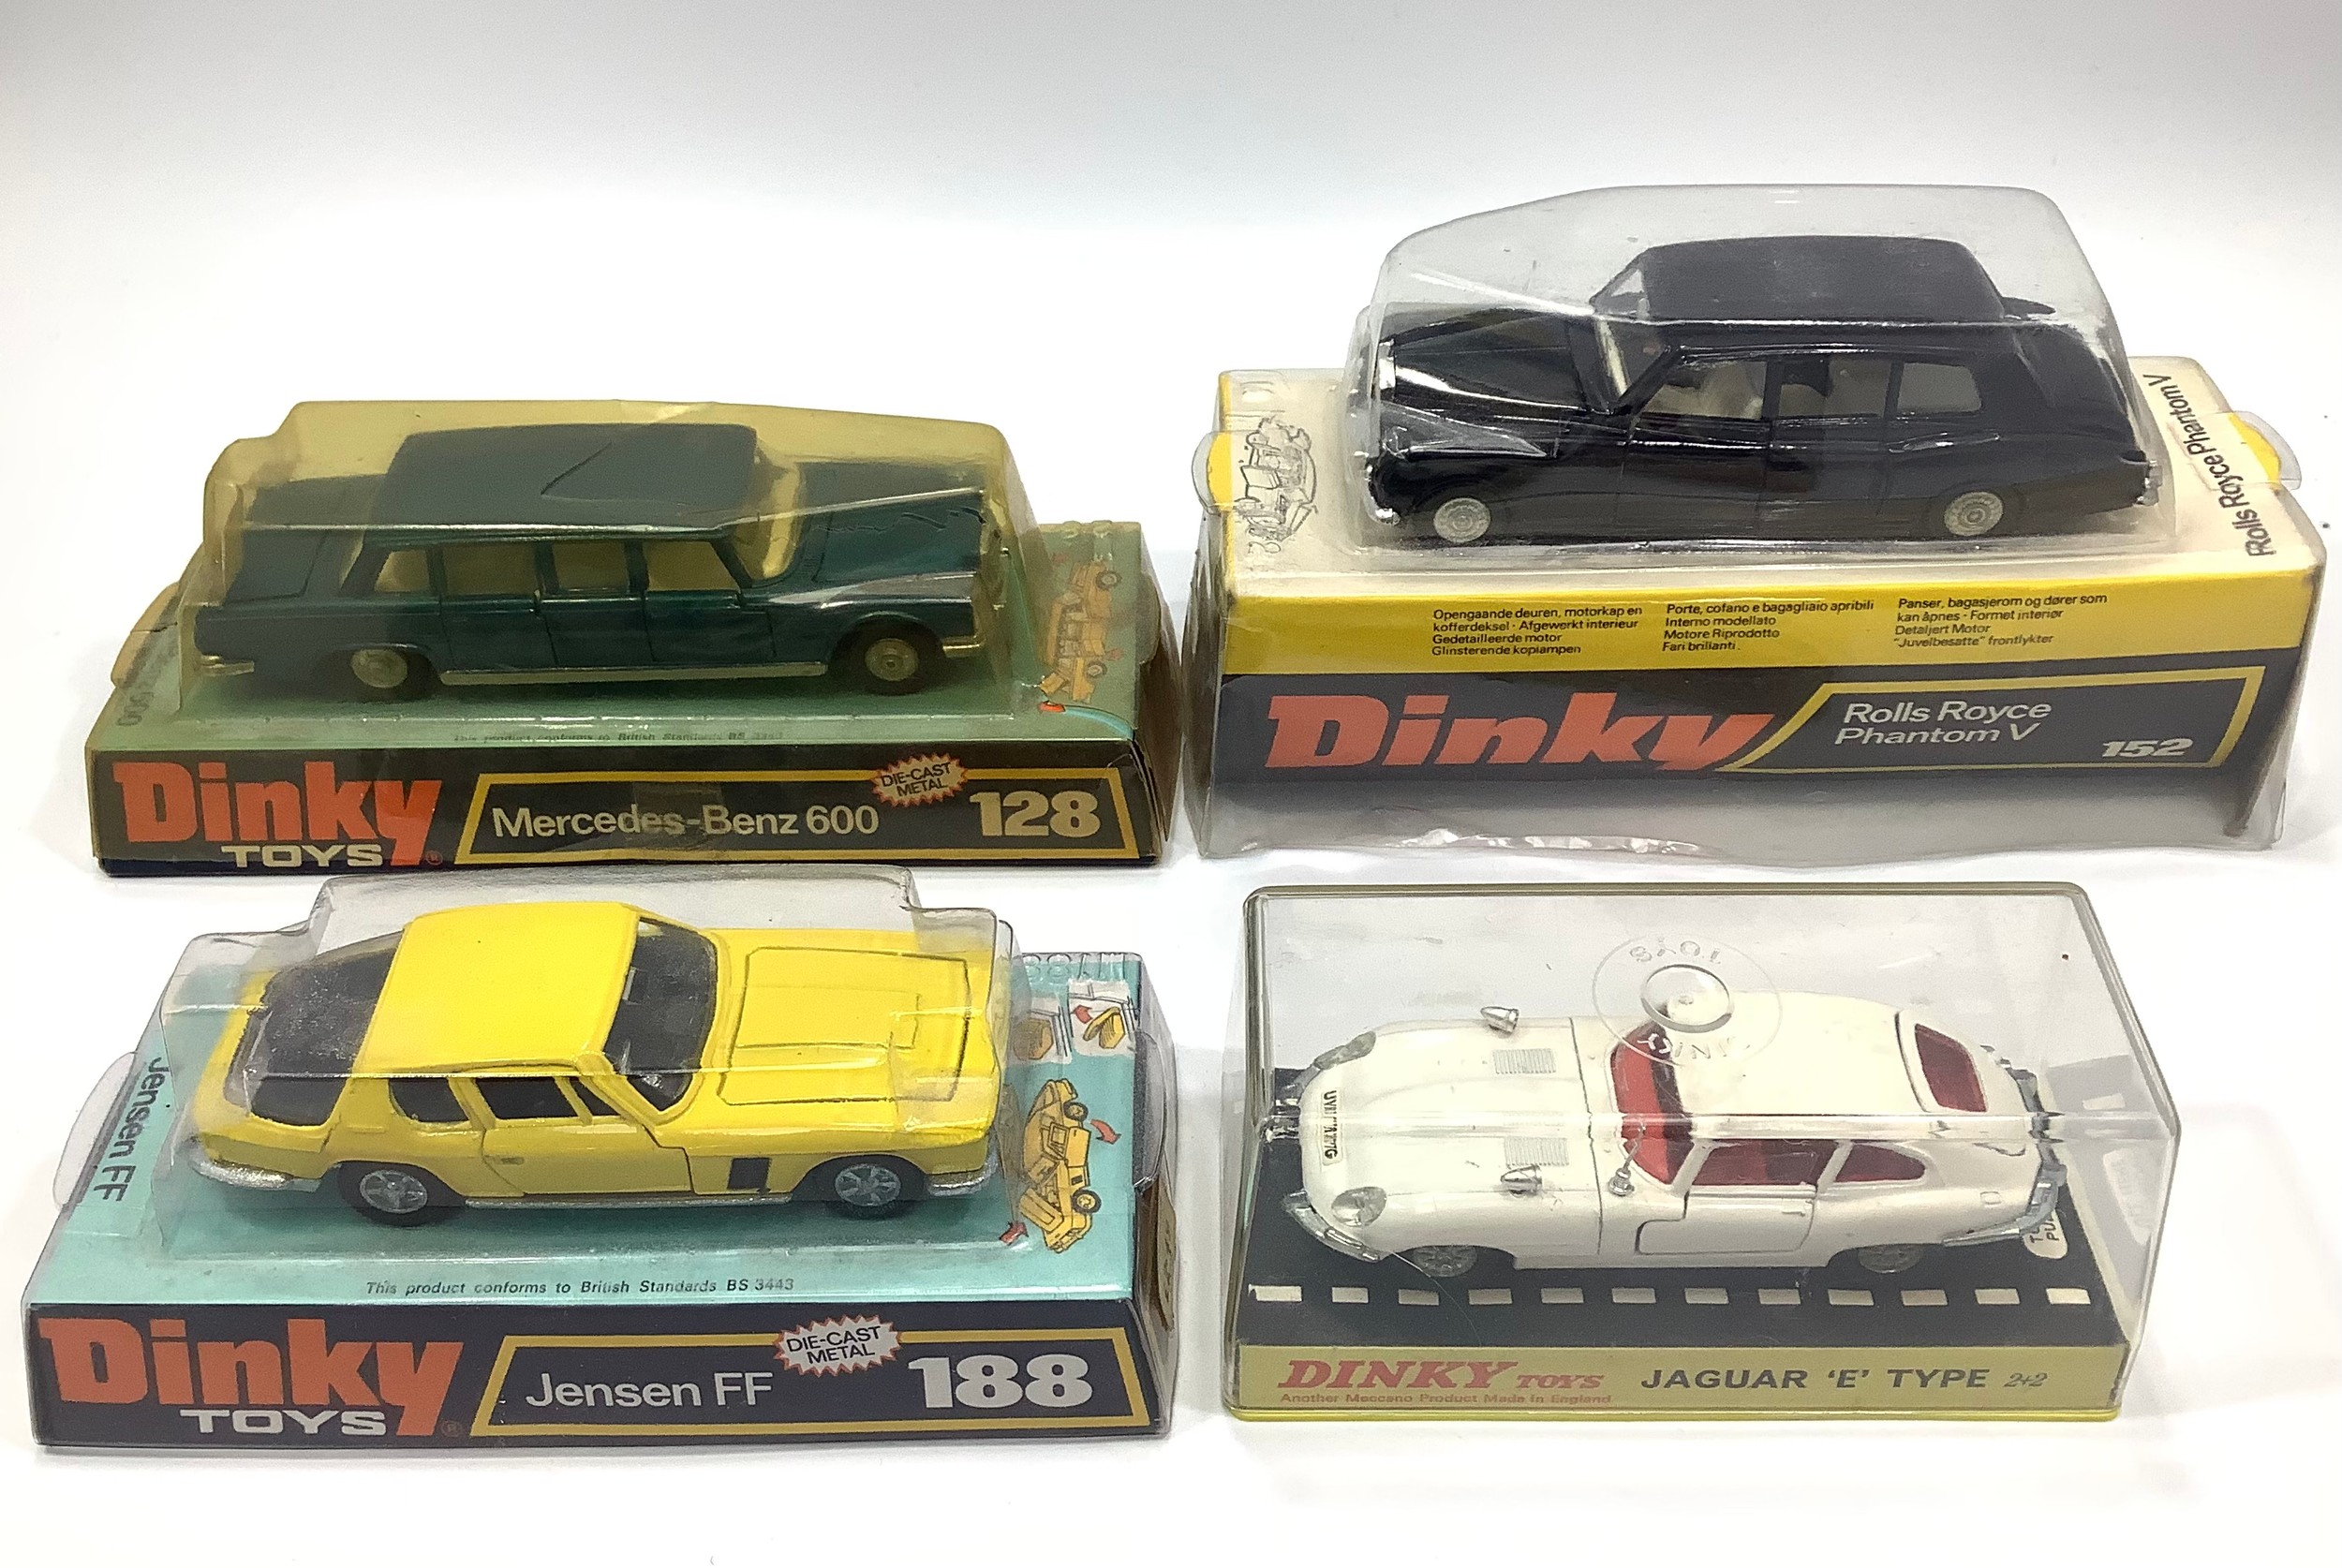 Four various Dinky Toys models including a black Rolls Royce Phantom V No. 152, a metallic blue